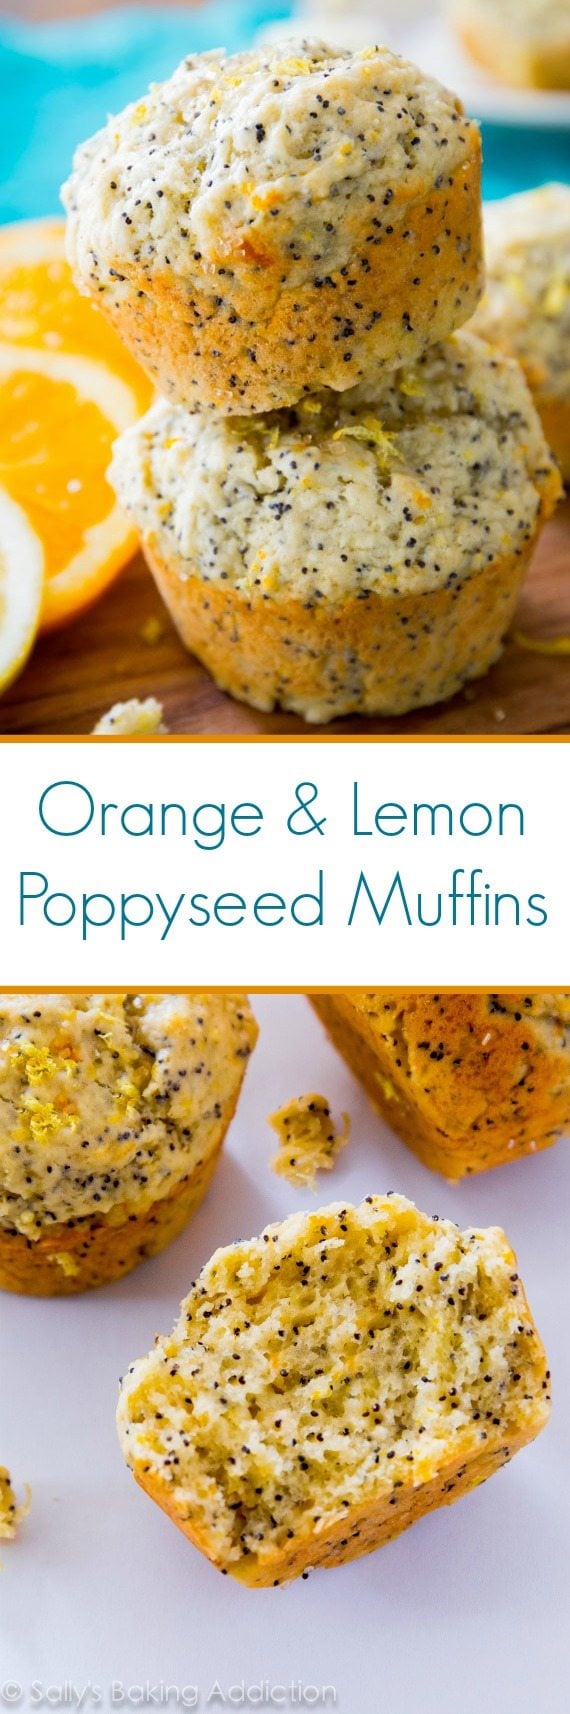 Orange Lemon Poppyseed Muffins - moist, sweet, and full of ...